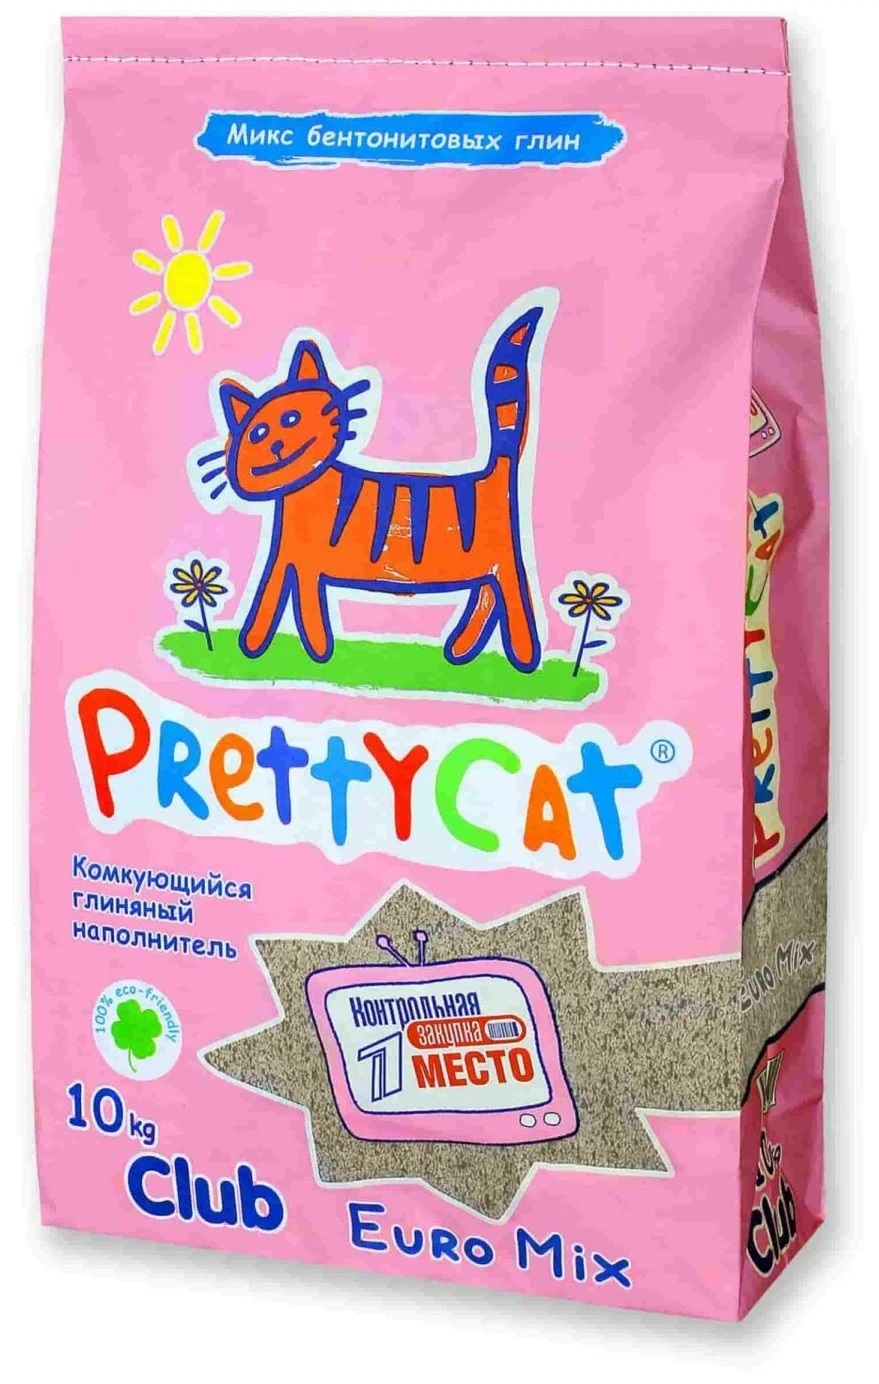 Наполнитель комкующийся для кошачьего туалета Pretty cat euro mix 10 кг